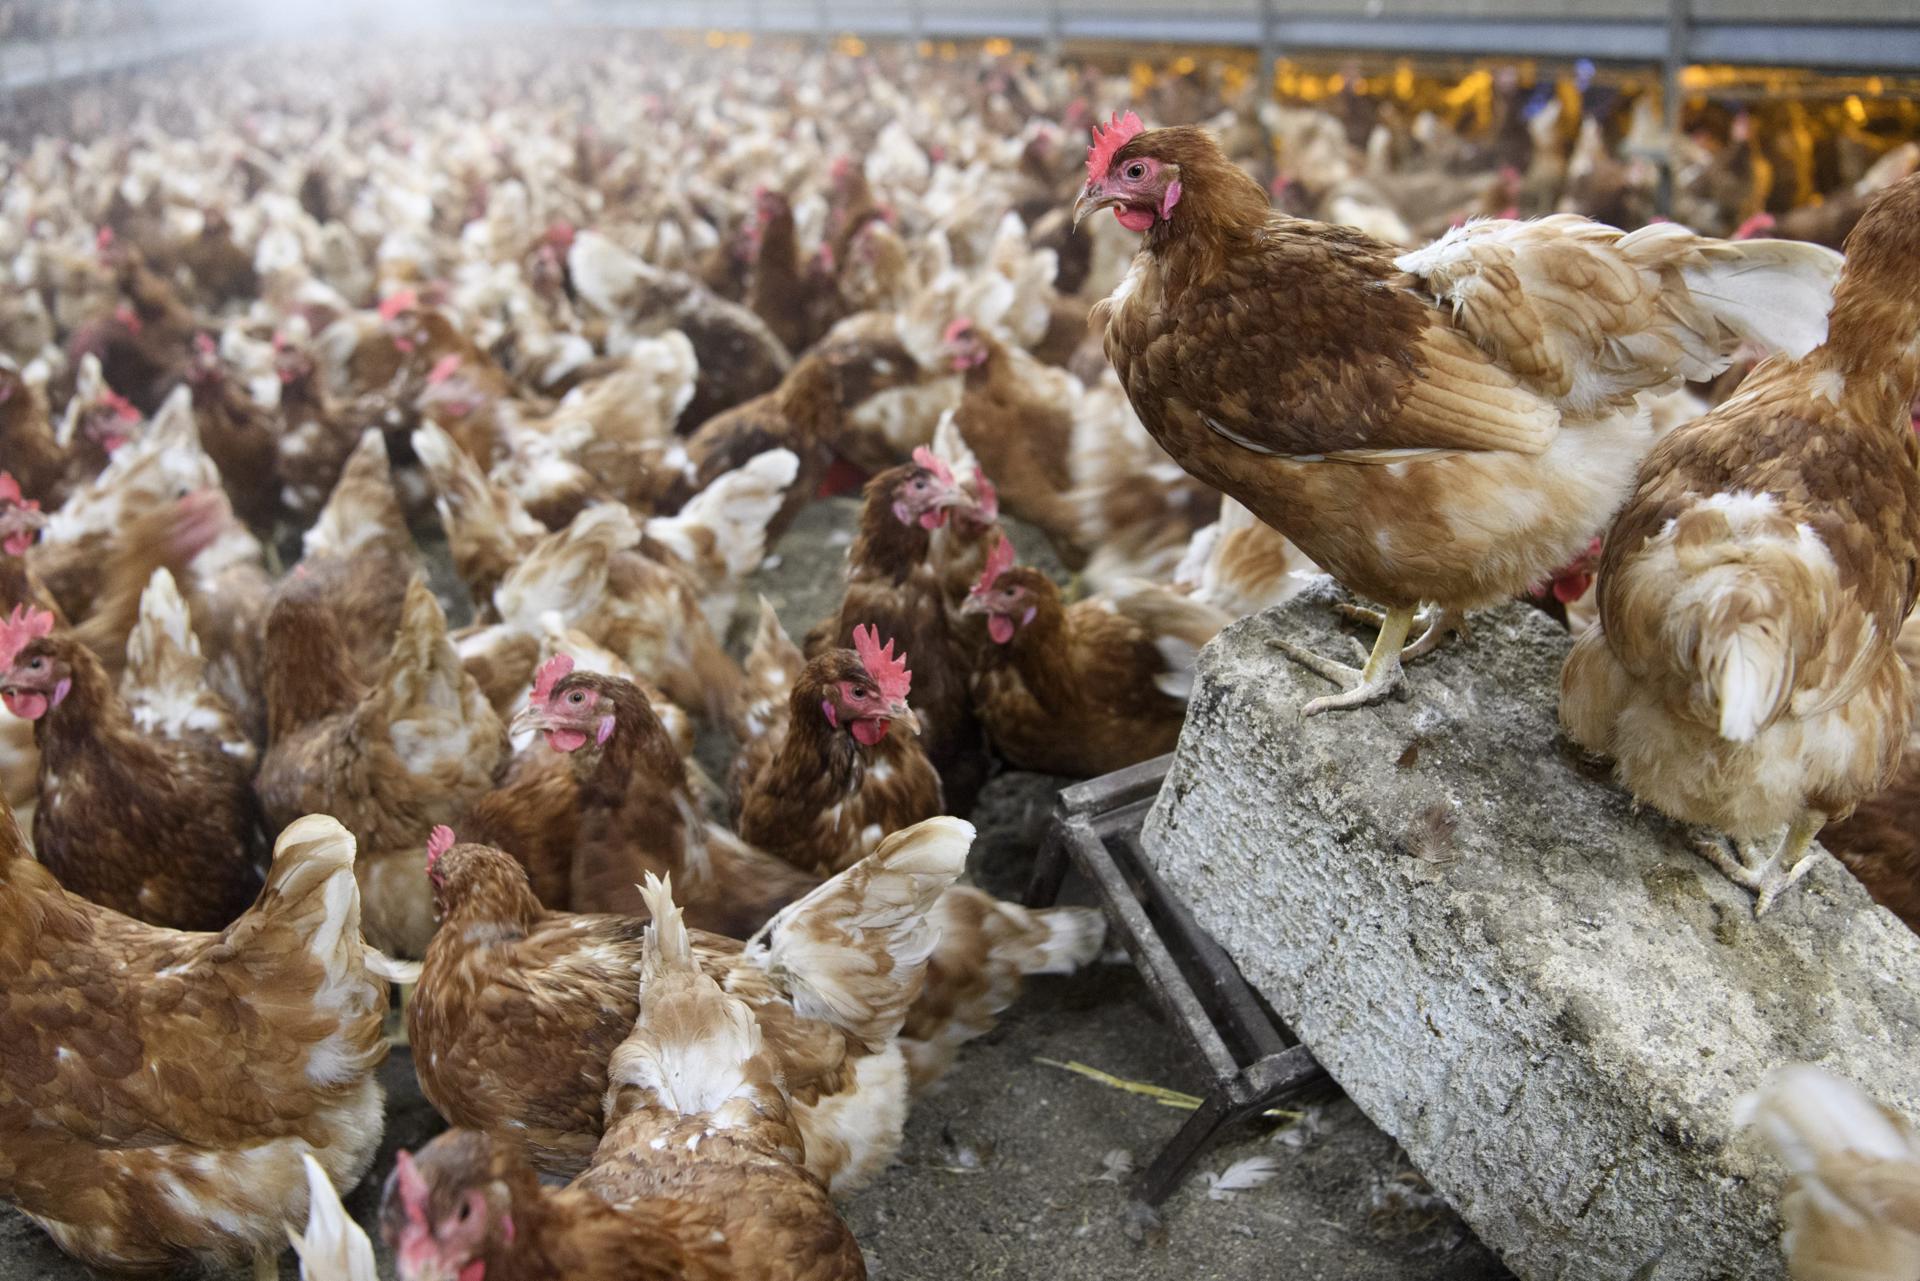 Vista de gallinas en una granja avícola, en una fotografía de archivo. Incrementan los caso de gripe aviar en América. EFE/Laurent Gillieron